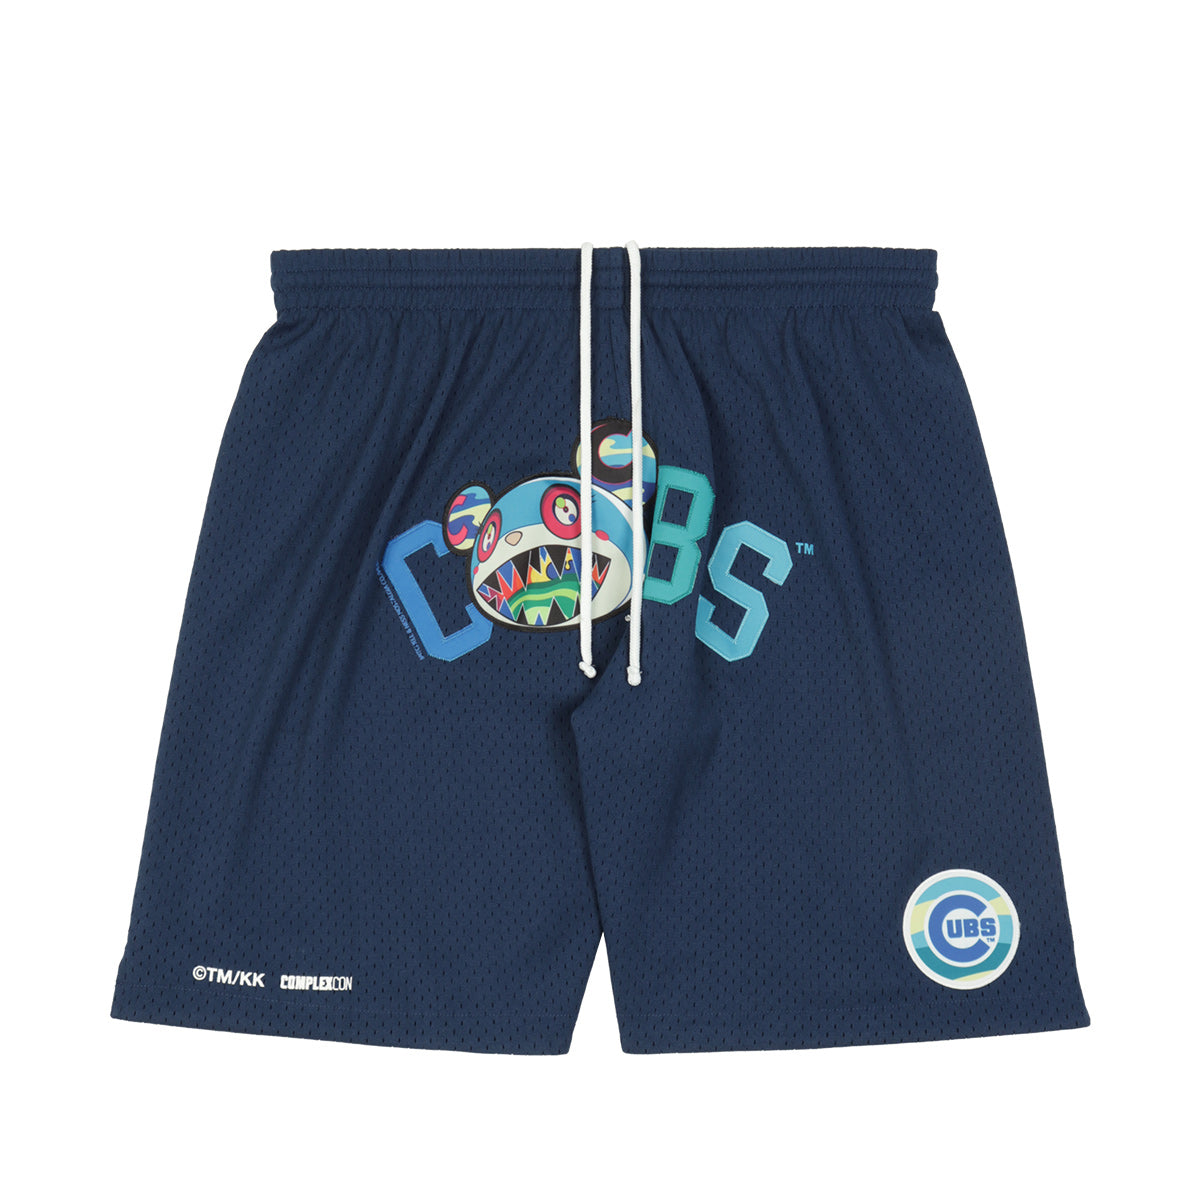 村上隆×Complex Con Cubs Shorts 短裤|cherry Online官方在线购物网站